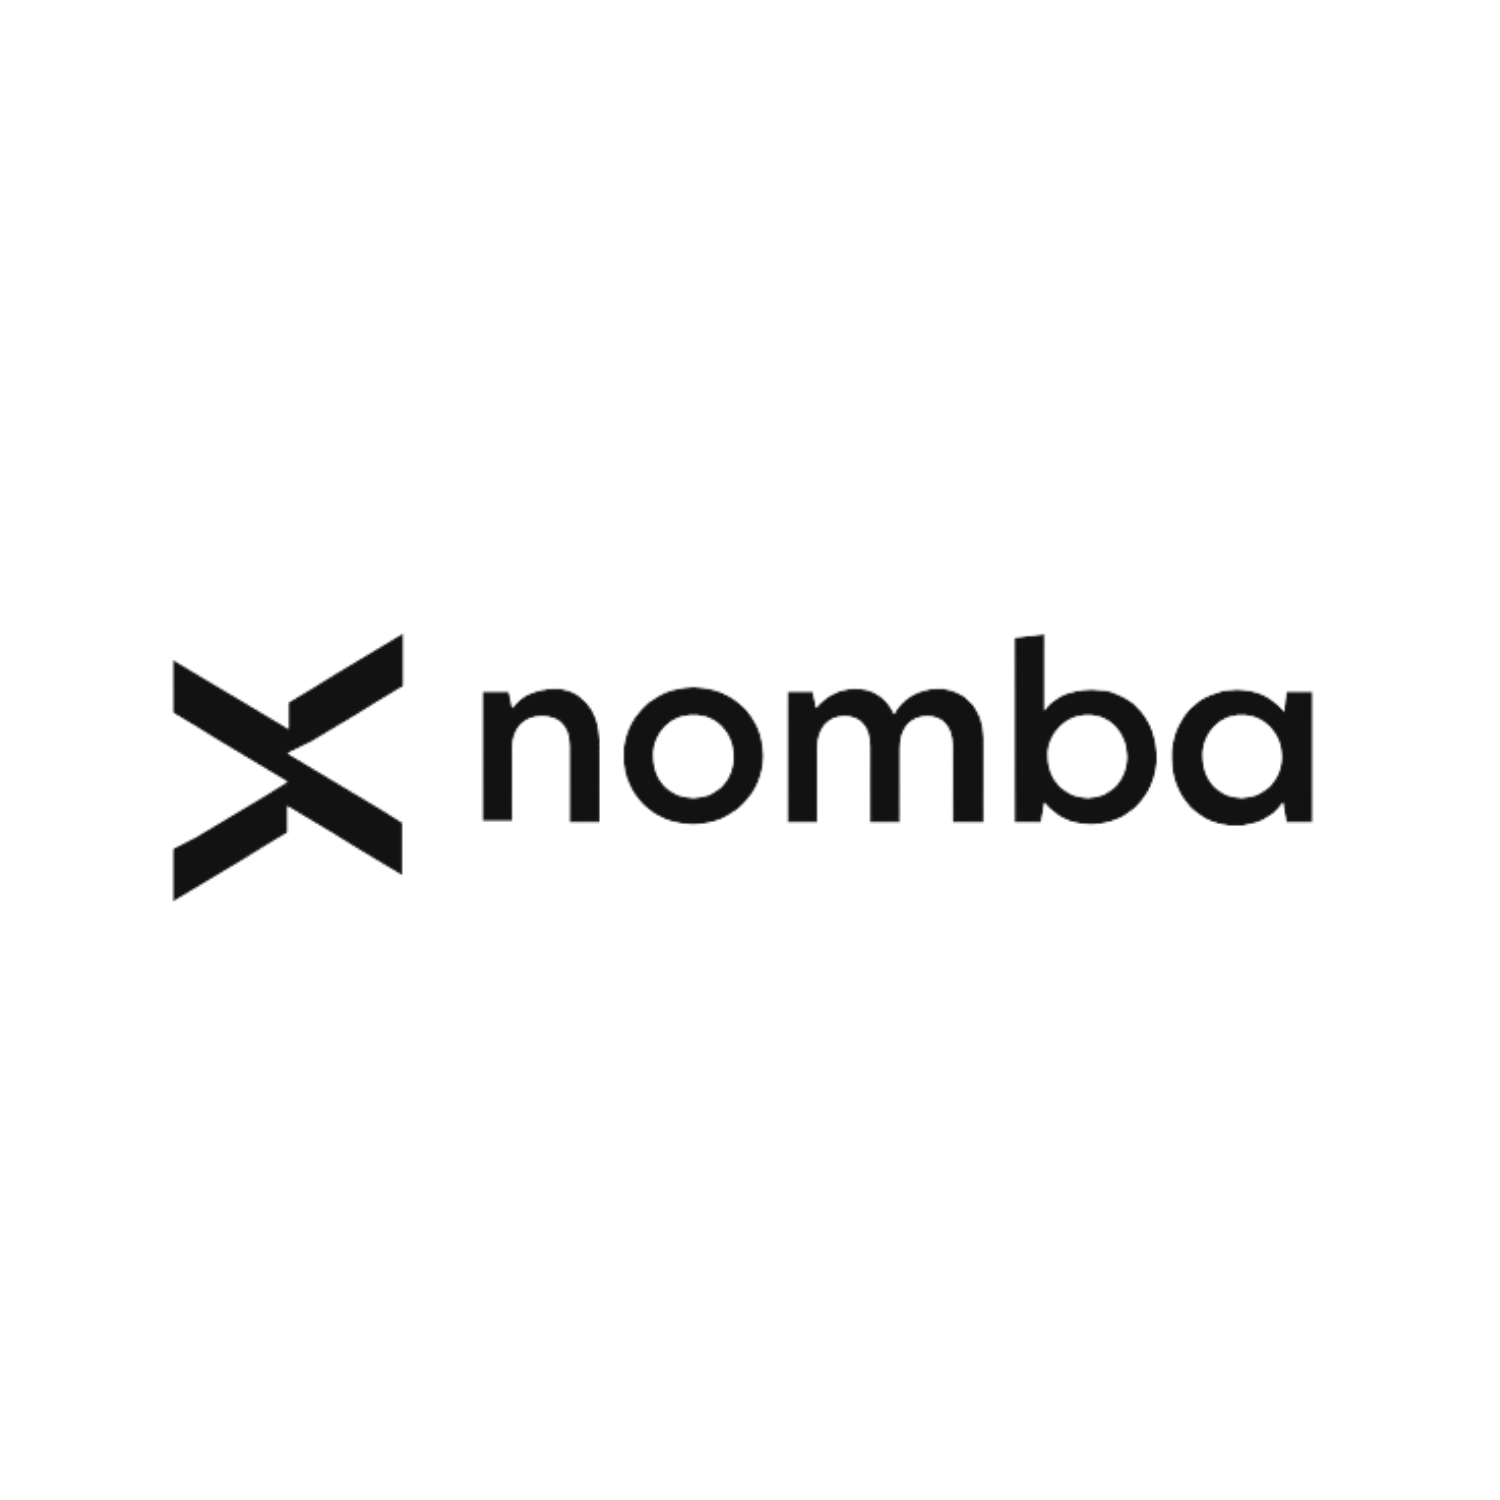 Nomba : Brand Short Description Type Here.